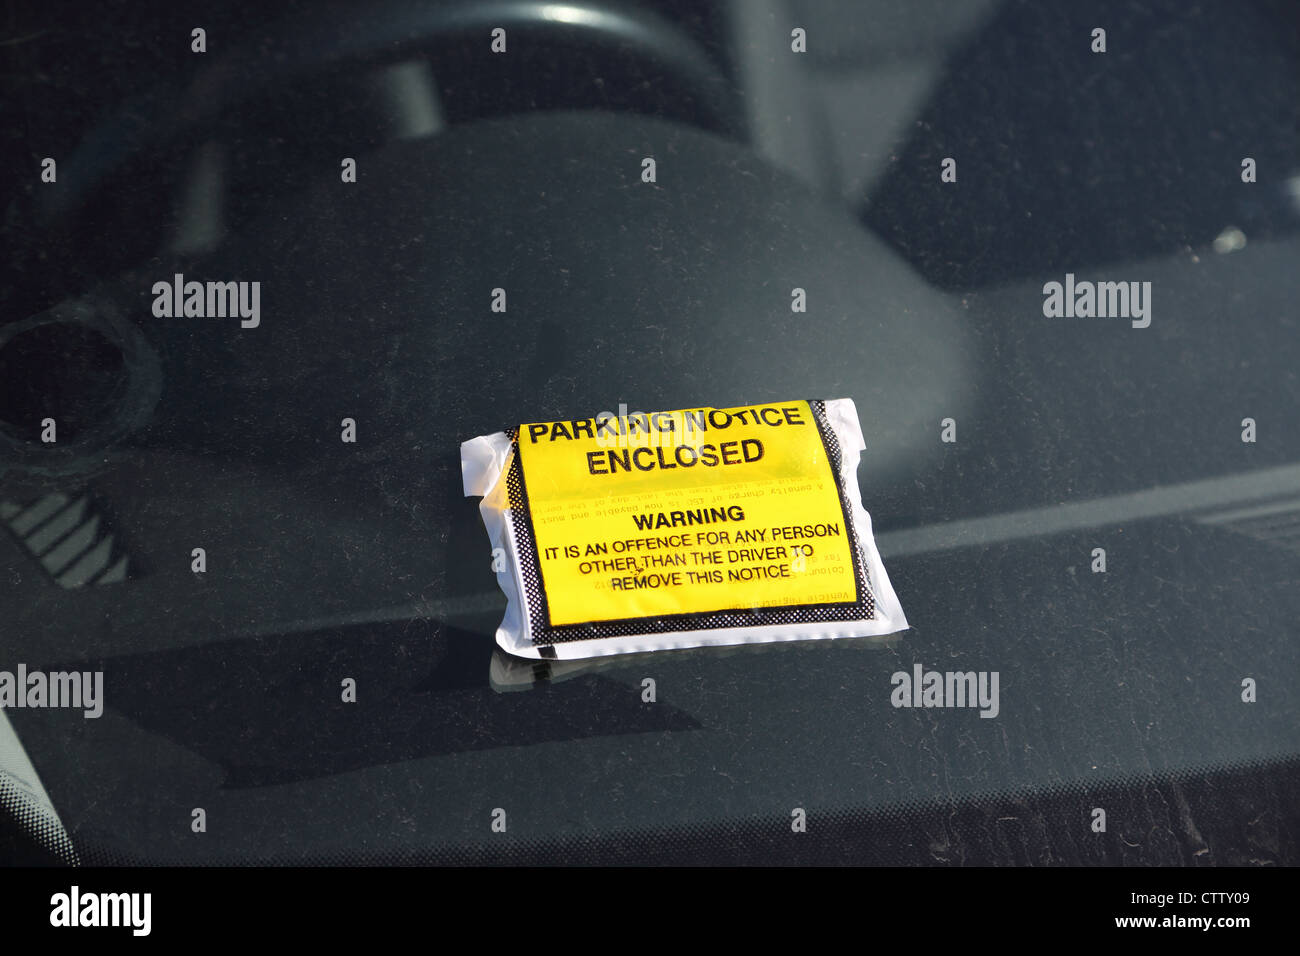 Eine Parkplatz Verletzung Bekanntmachung wurde auf einem Wagen schmutzig Windschutzscheibe platziert. Stockfoto